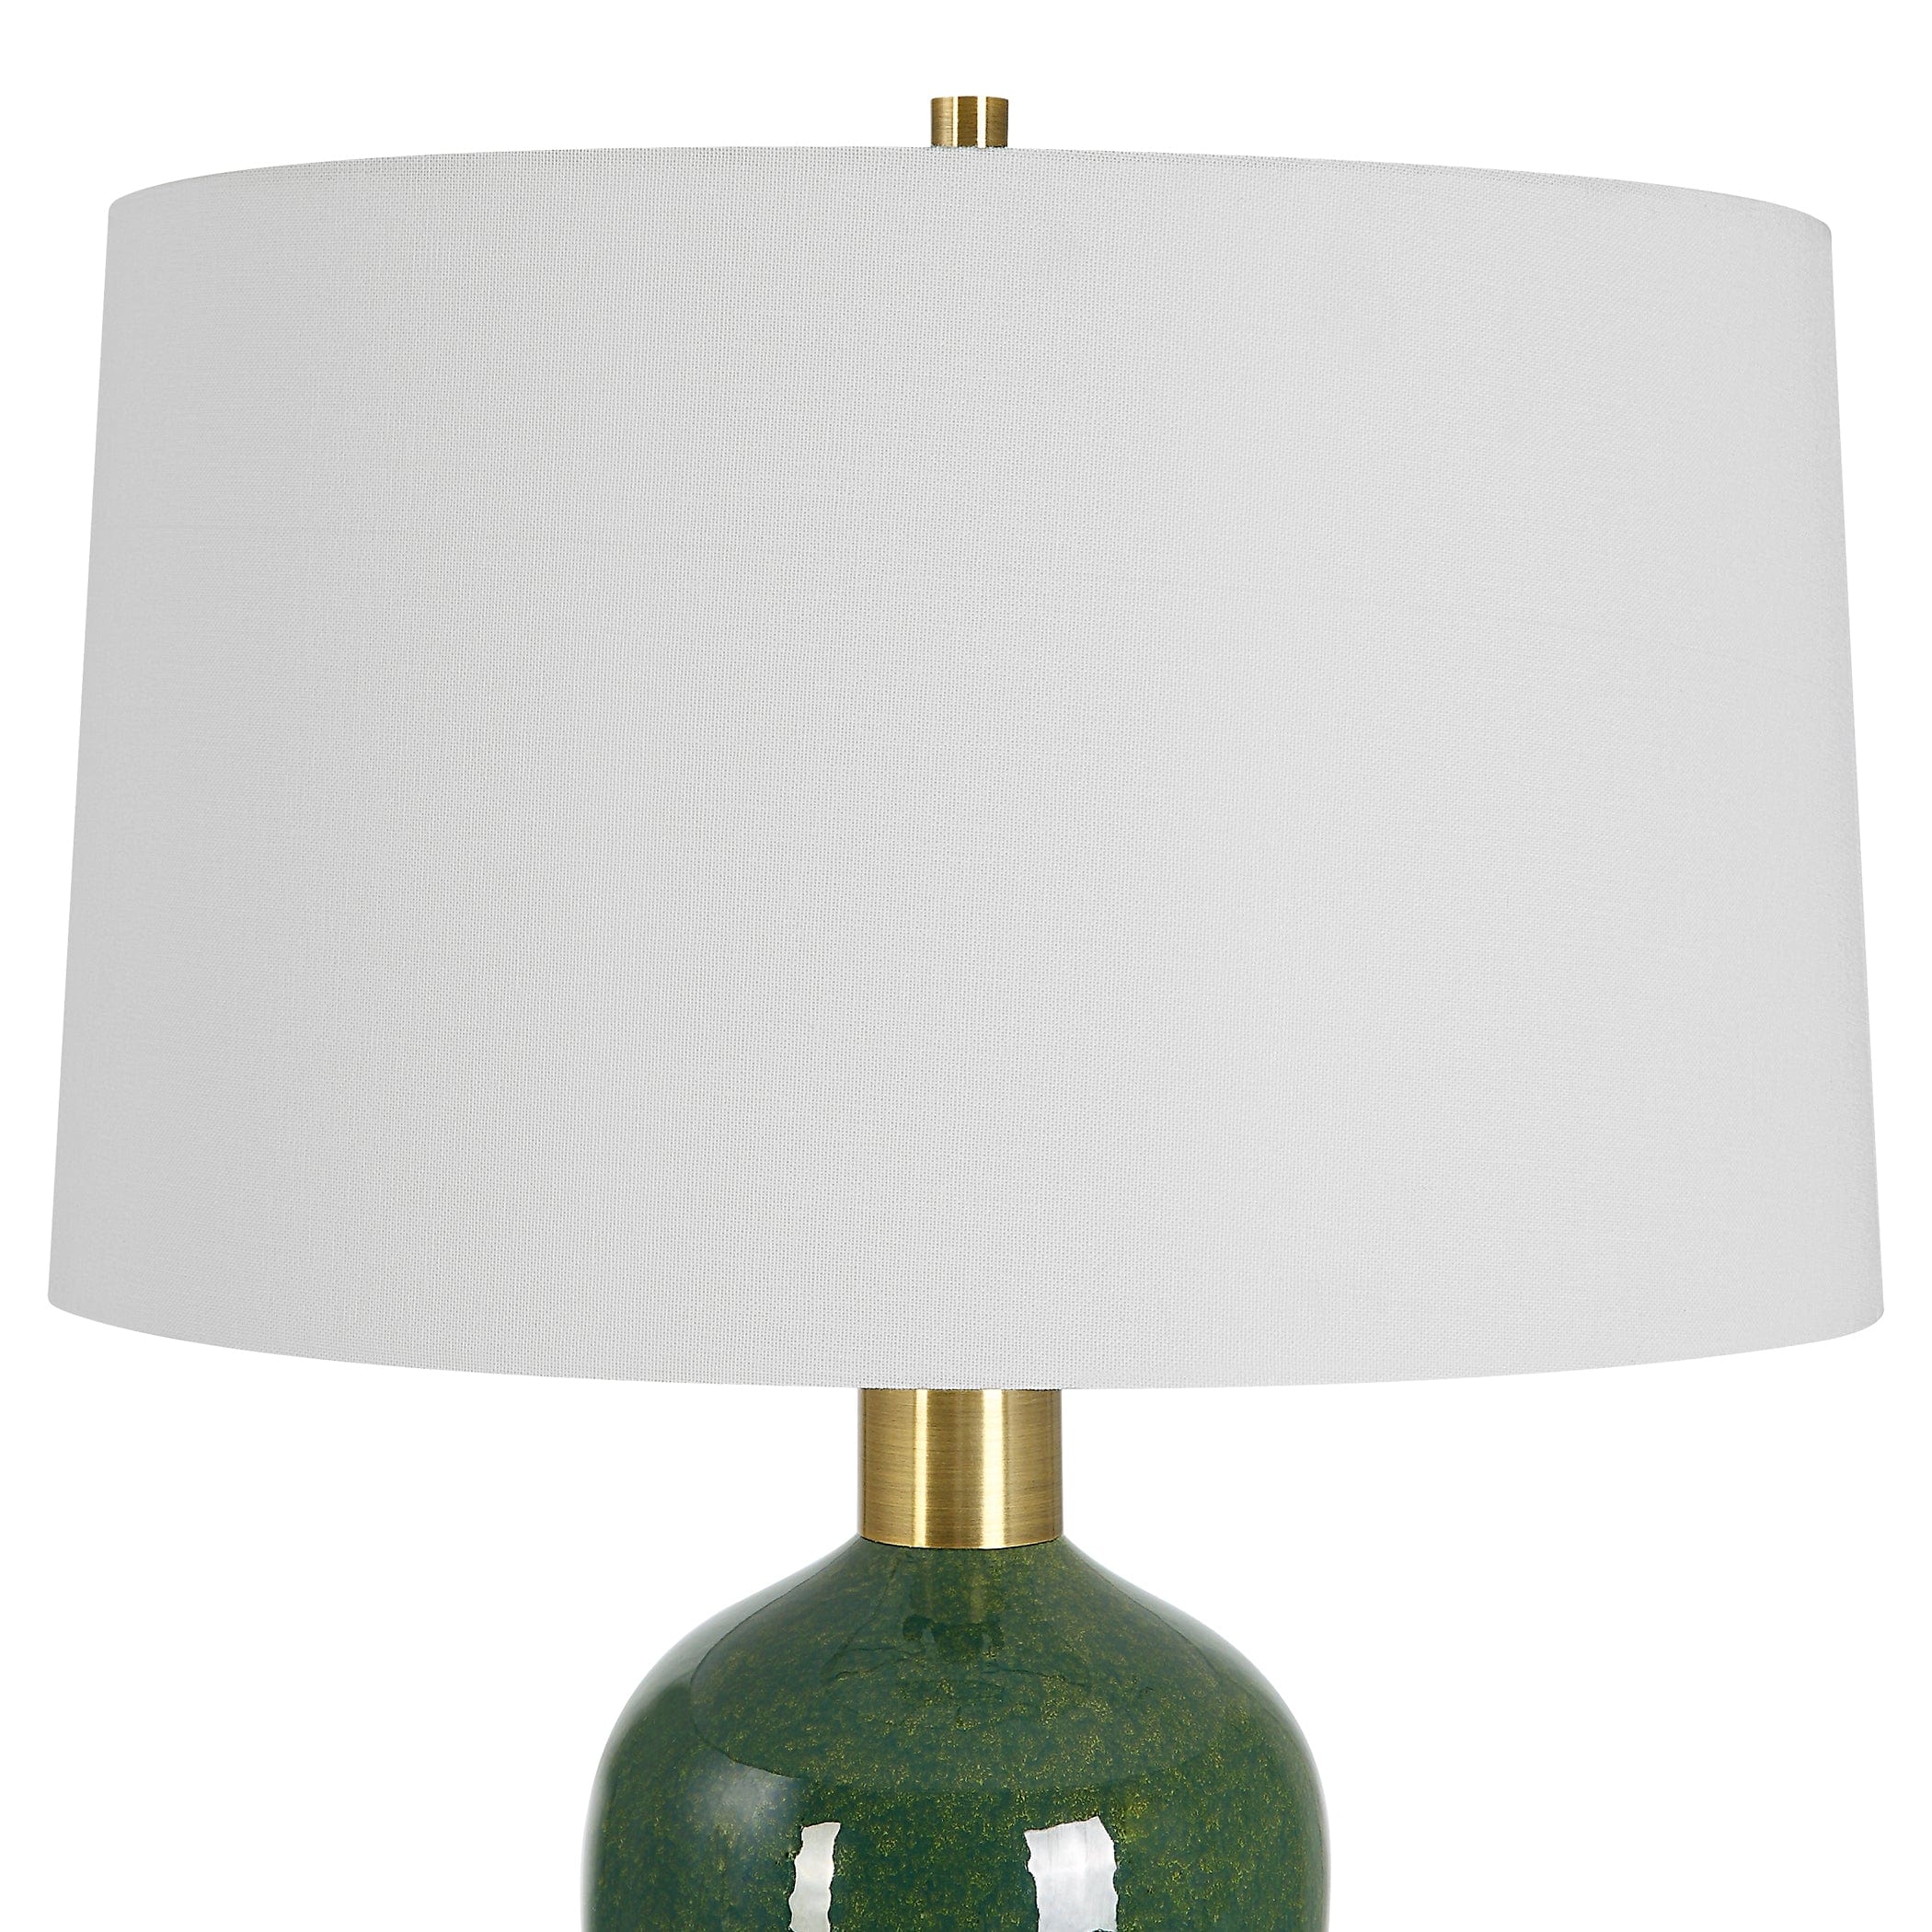 Verdell Green Table Lamp Uttermost